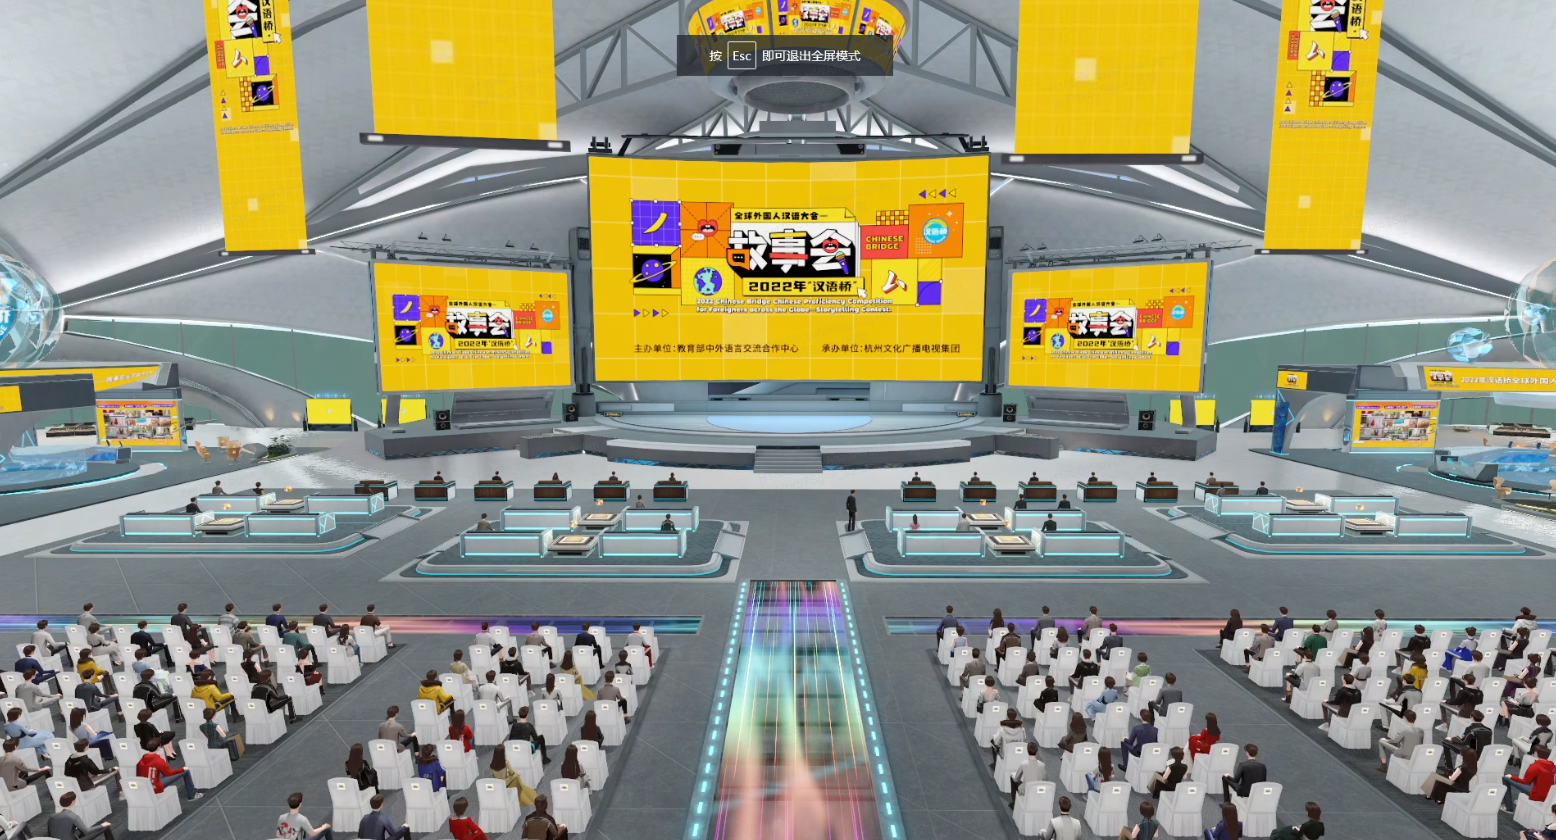 这是一张描绘现代电子竞技场馆的图片，有大屏幕、观众席和比赛台，氛围热烈，色彩鲜明，充满科技感。